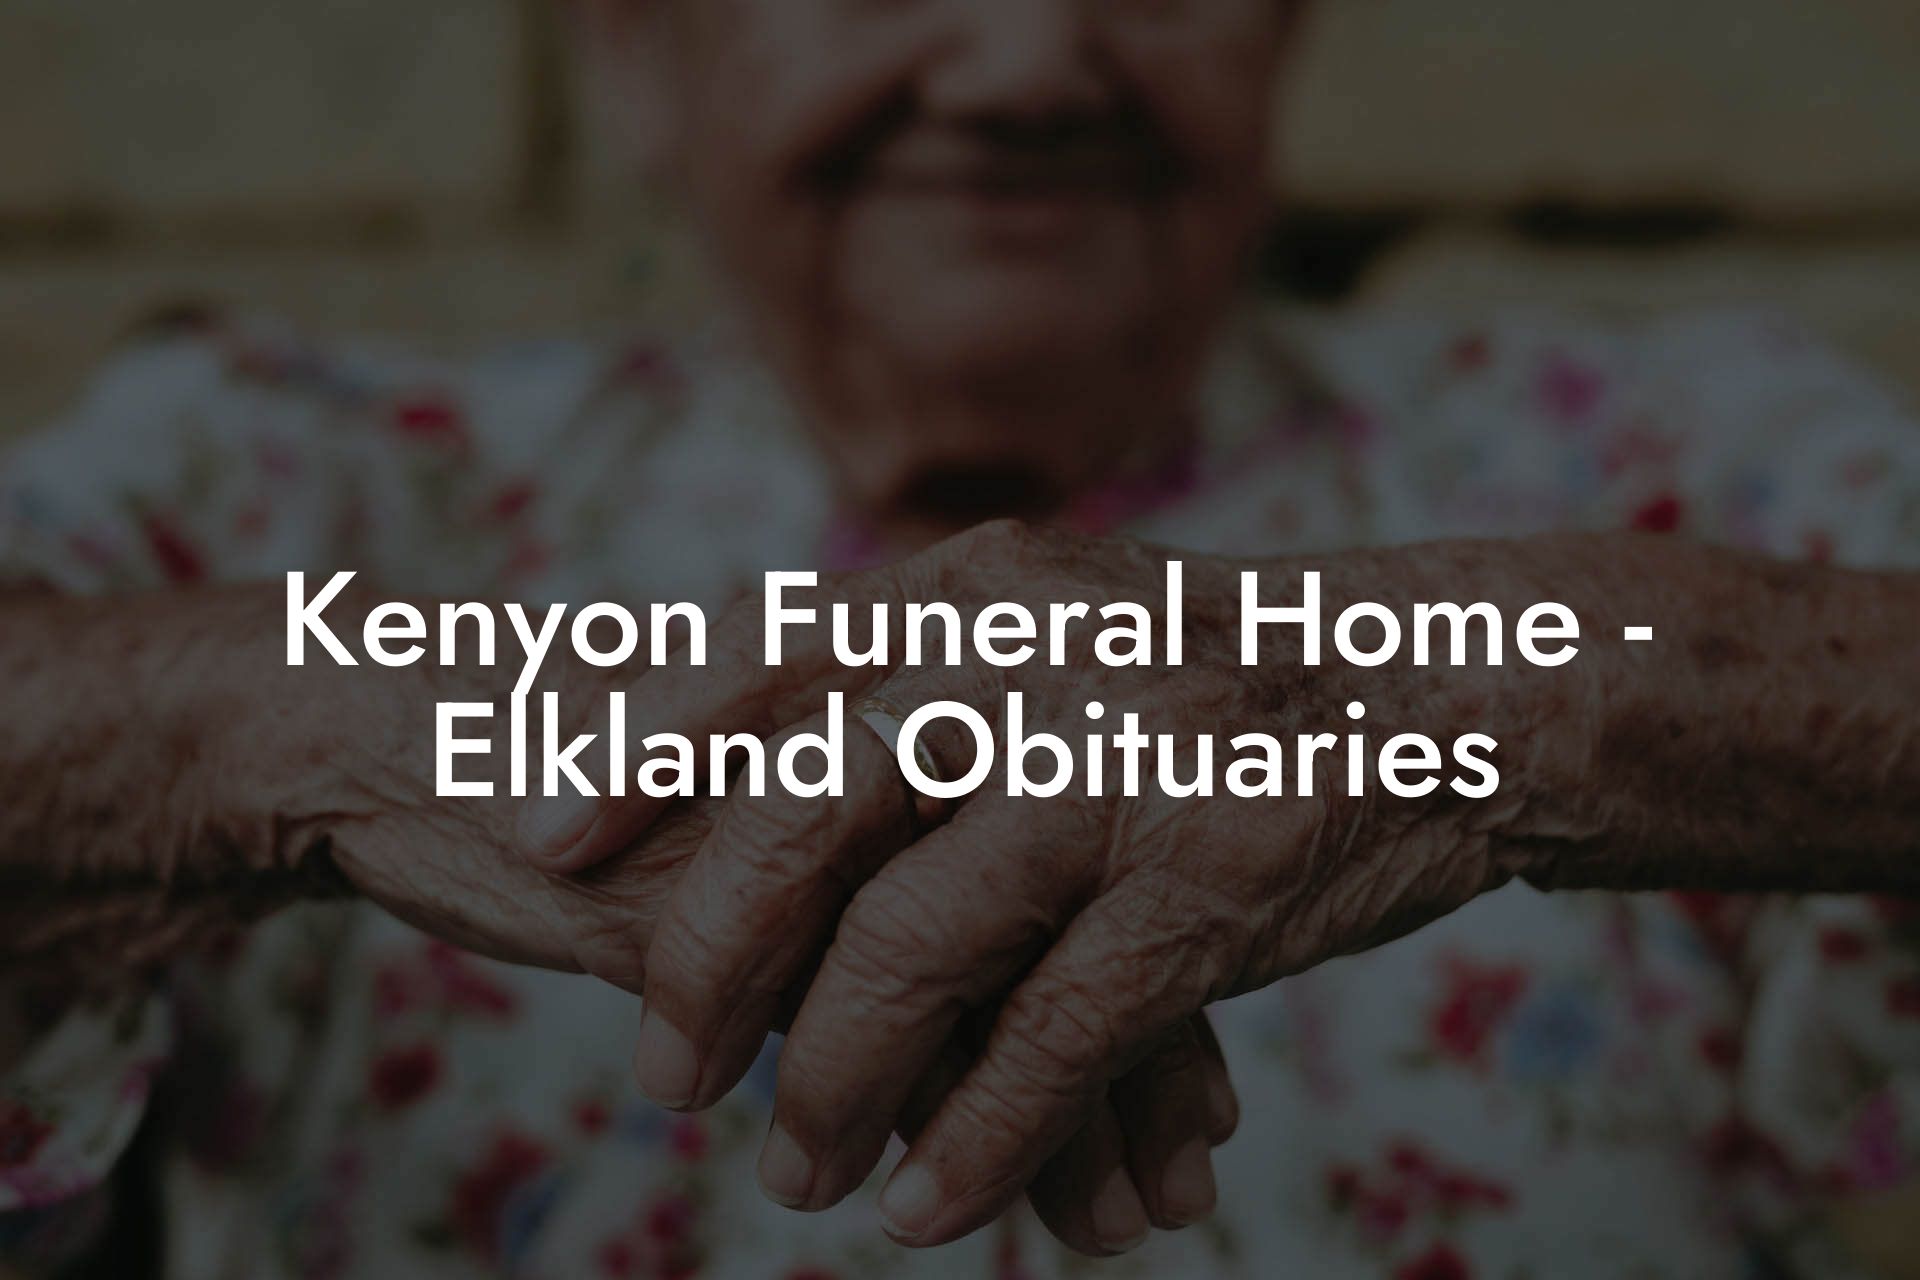 Kenyon Funeral Home - Elkland Obituaries